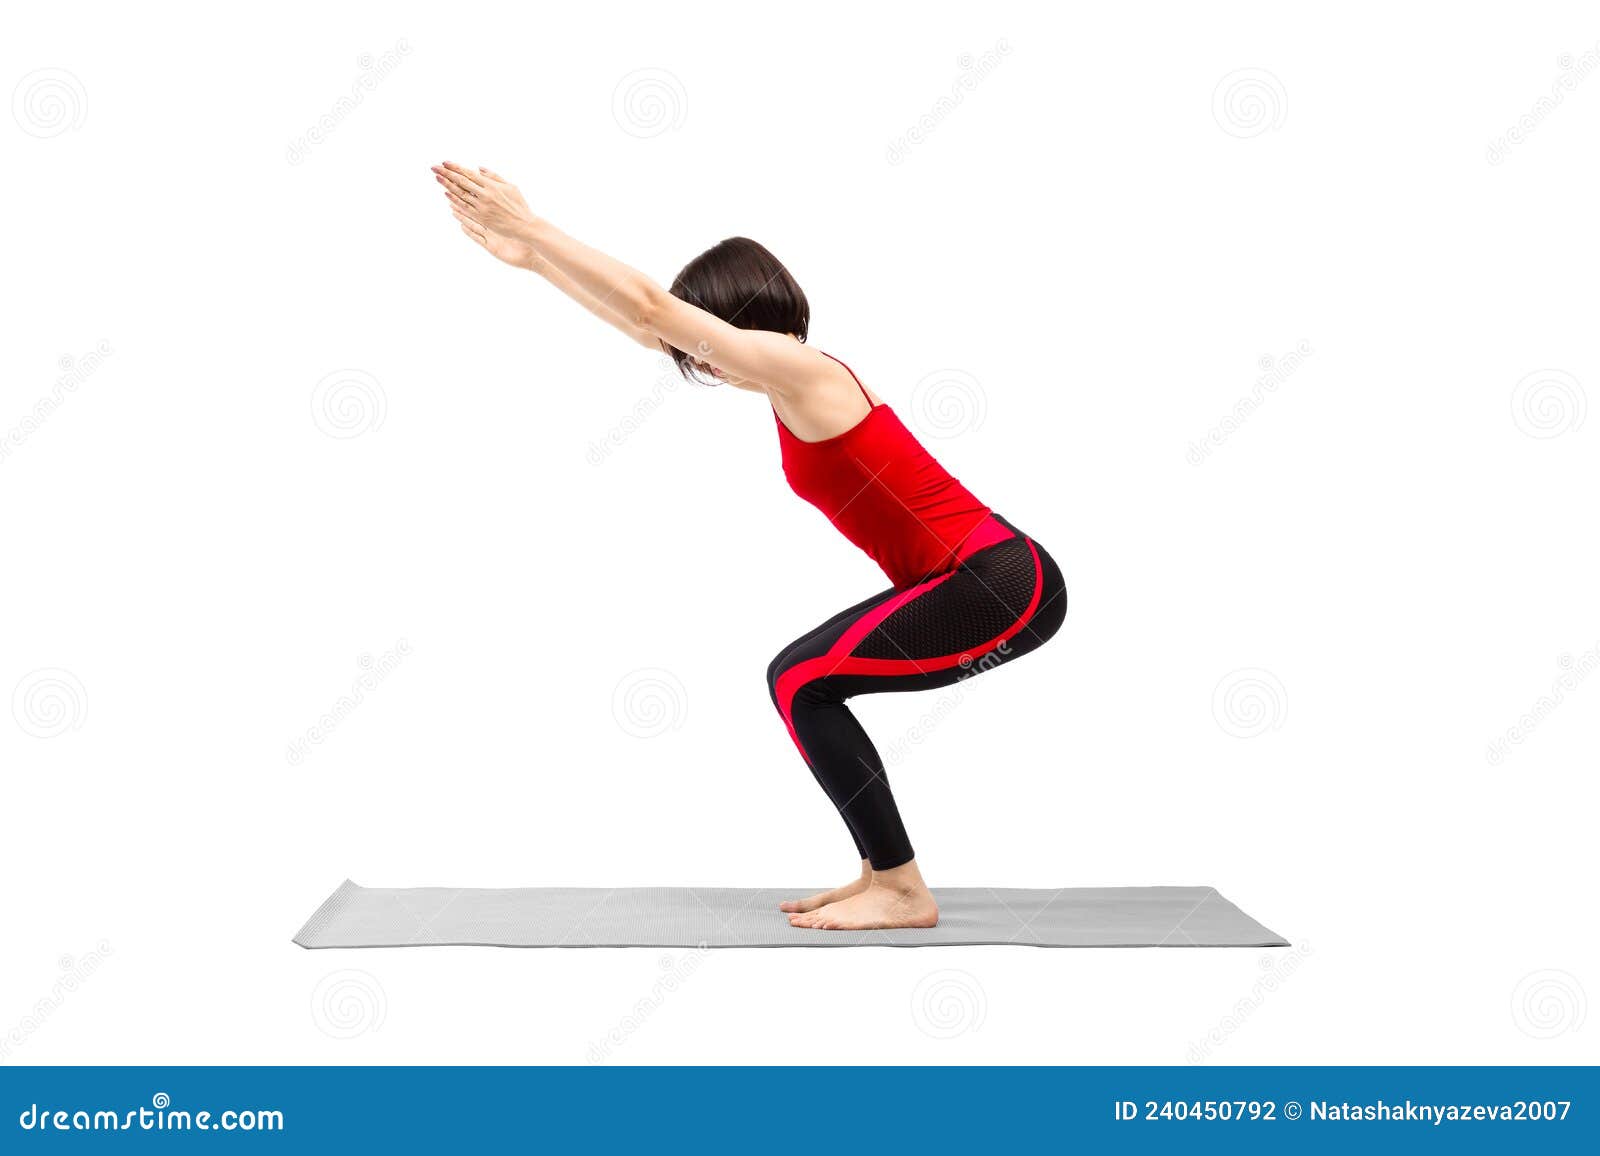 Pose De Chaise De Yoga. Femme En Tenue Attrayante En Rouge Sport